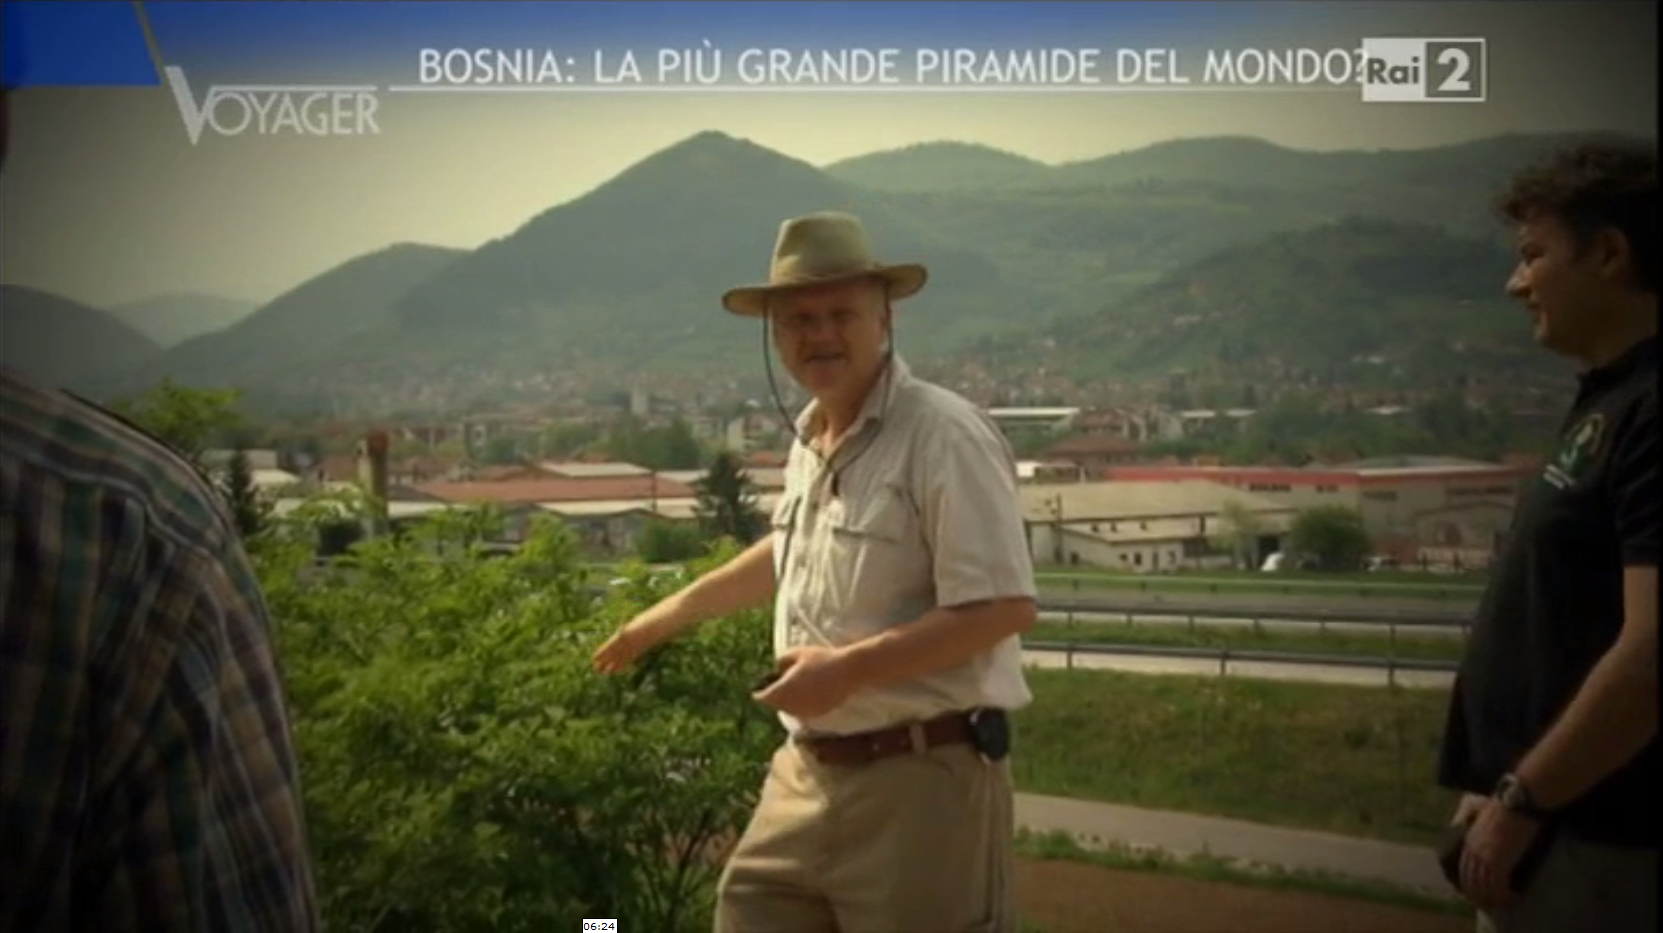 Voyager - Le Piramidi Bosniache di Visoko